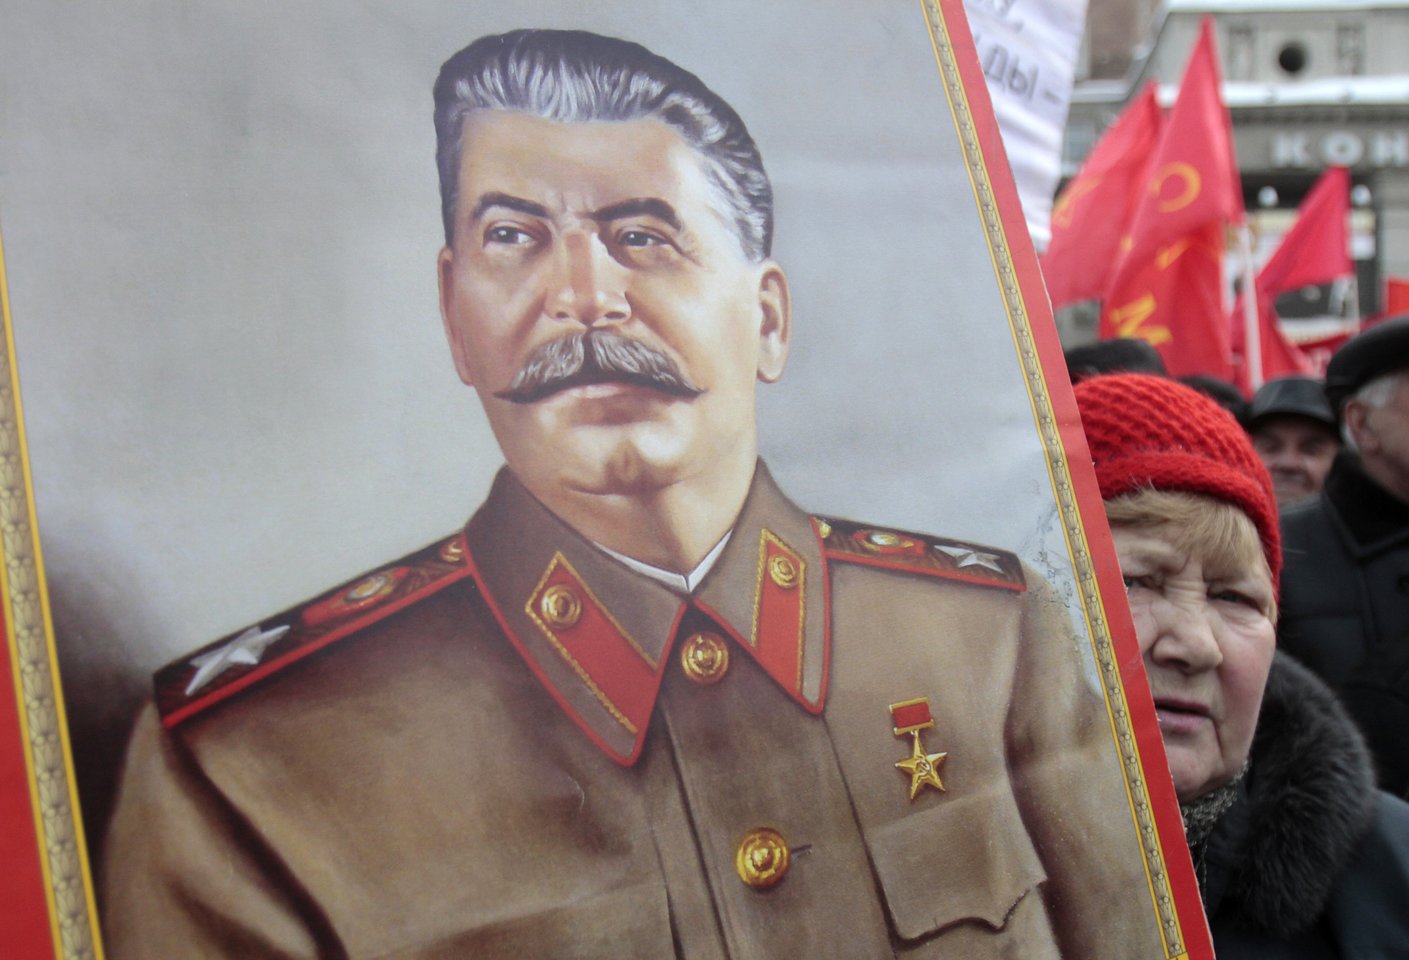  Stalinui iš naujo yra statomi paminklai, teigiama, kad Stalinas sukūrė stiprią valstybę, kad tai buvo pasididžiavimas – taigi kažkuria prasme jis yra reabilituojamas dabar, mano istorikas.<br> Reuters / Scanpix nuotr.